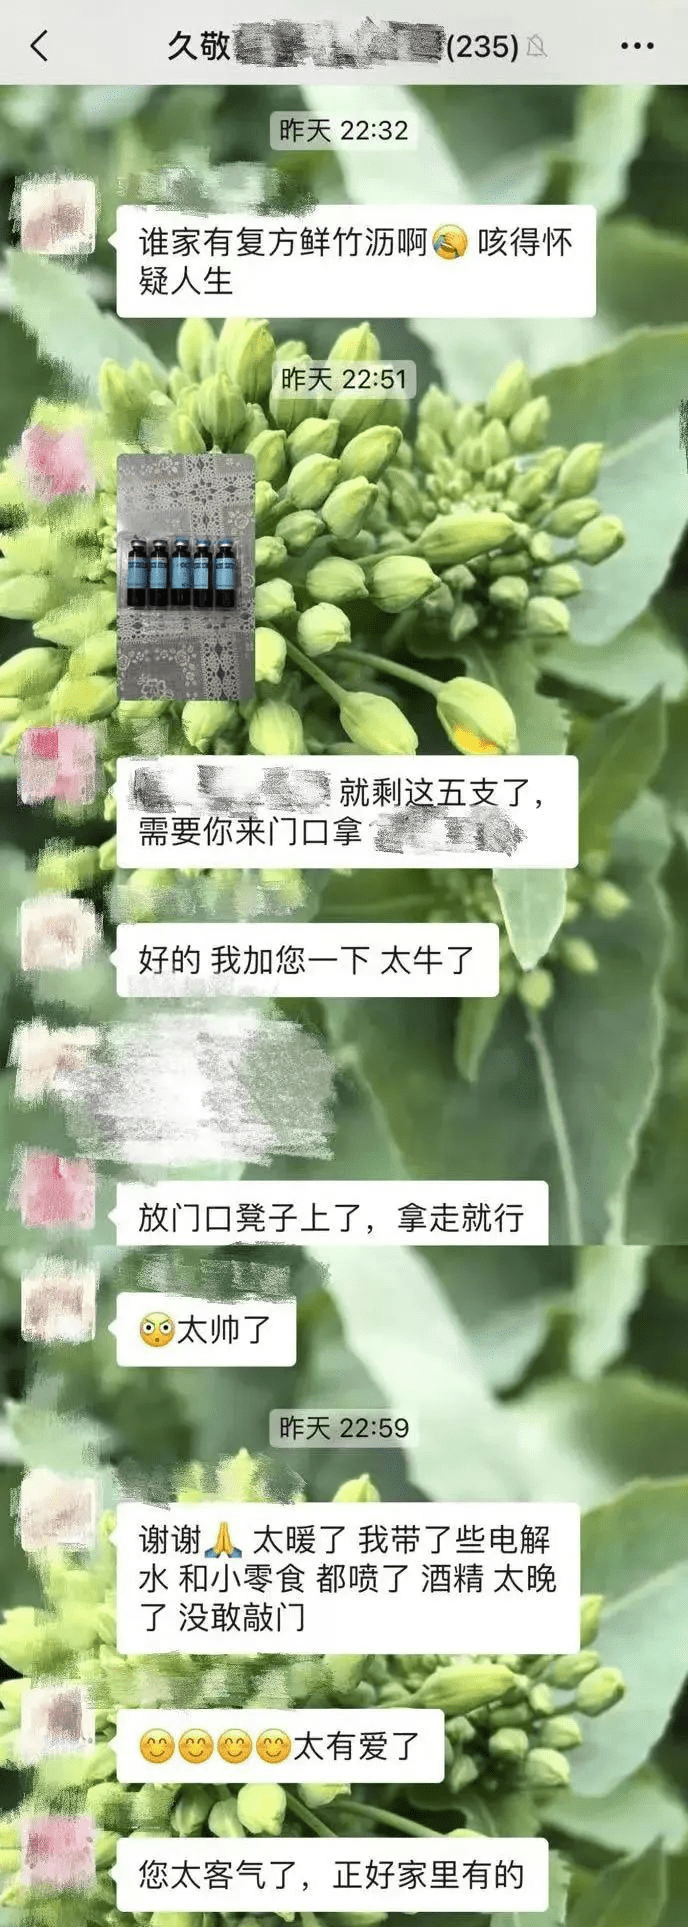 北京丰台：微信群成互助平台，富余药物邻里共享